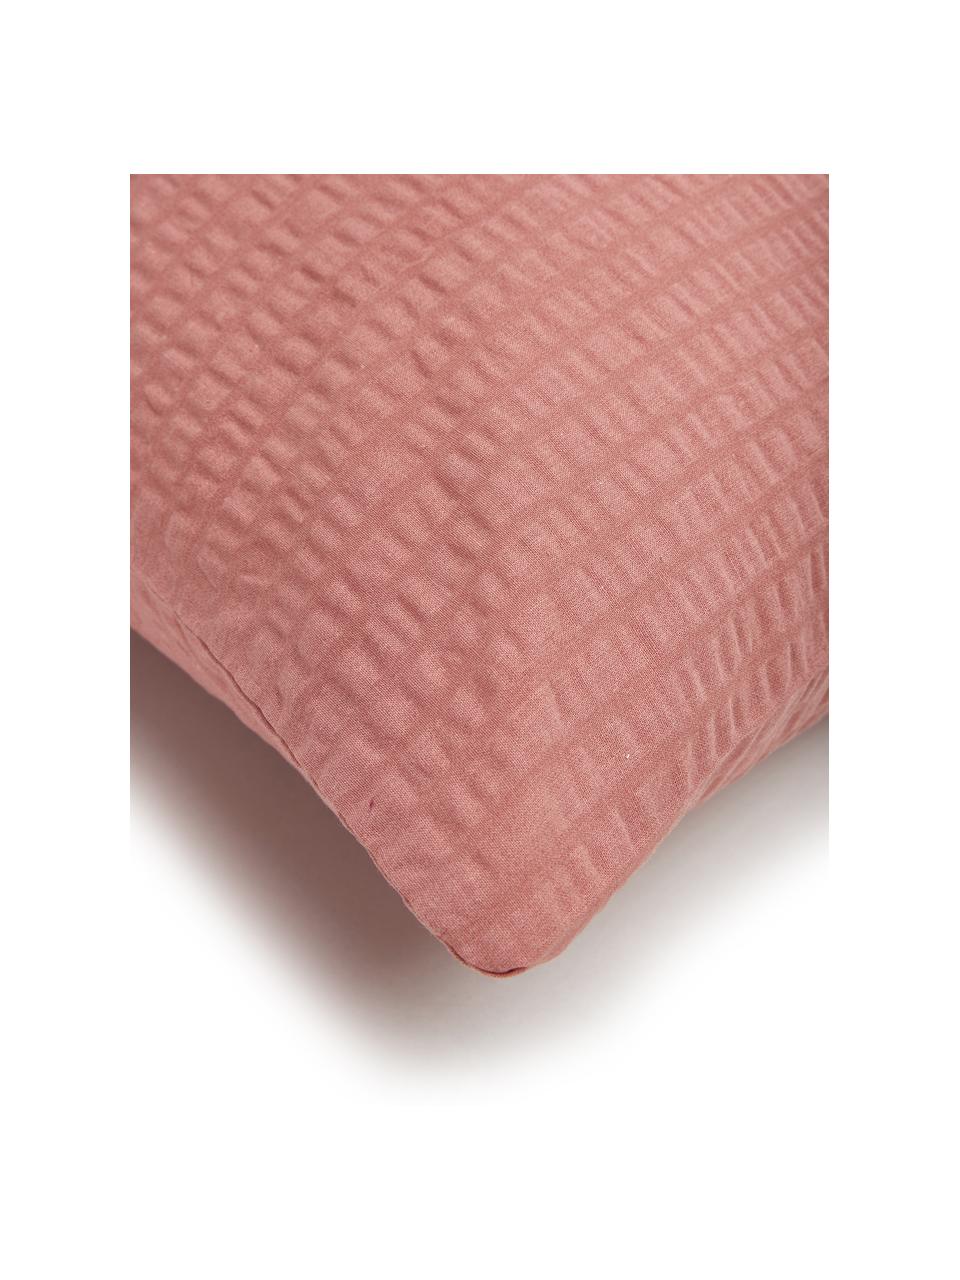 Seersucker-Bettwäsche Wave aus Baumwolle in Terrakotta, Webart: Seersucker Fadendichte 14, Altrosa, 155 x 220 cm + 1 Kissen 80 x 80 cm